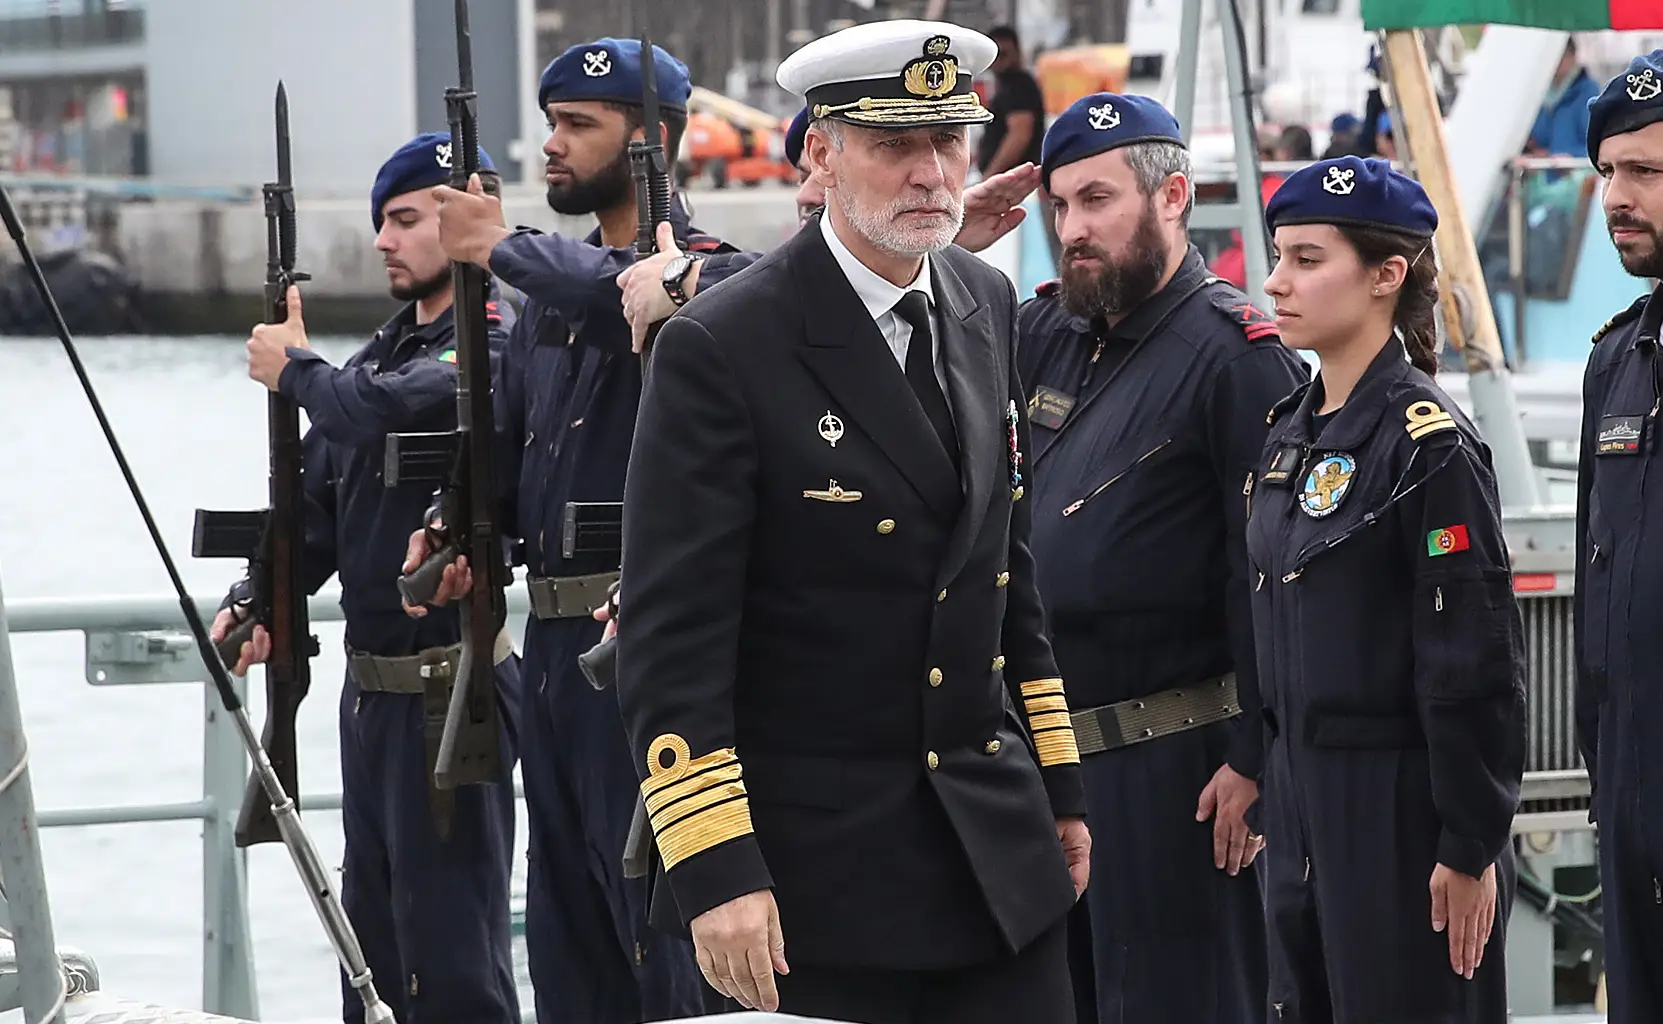 Gouveia e Melo à guarnição do "Mondego": "A Marinha não esquece nem perdoa atos de indisciplina"